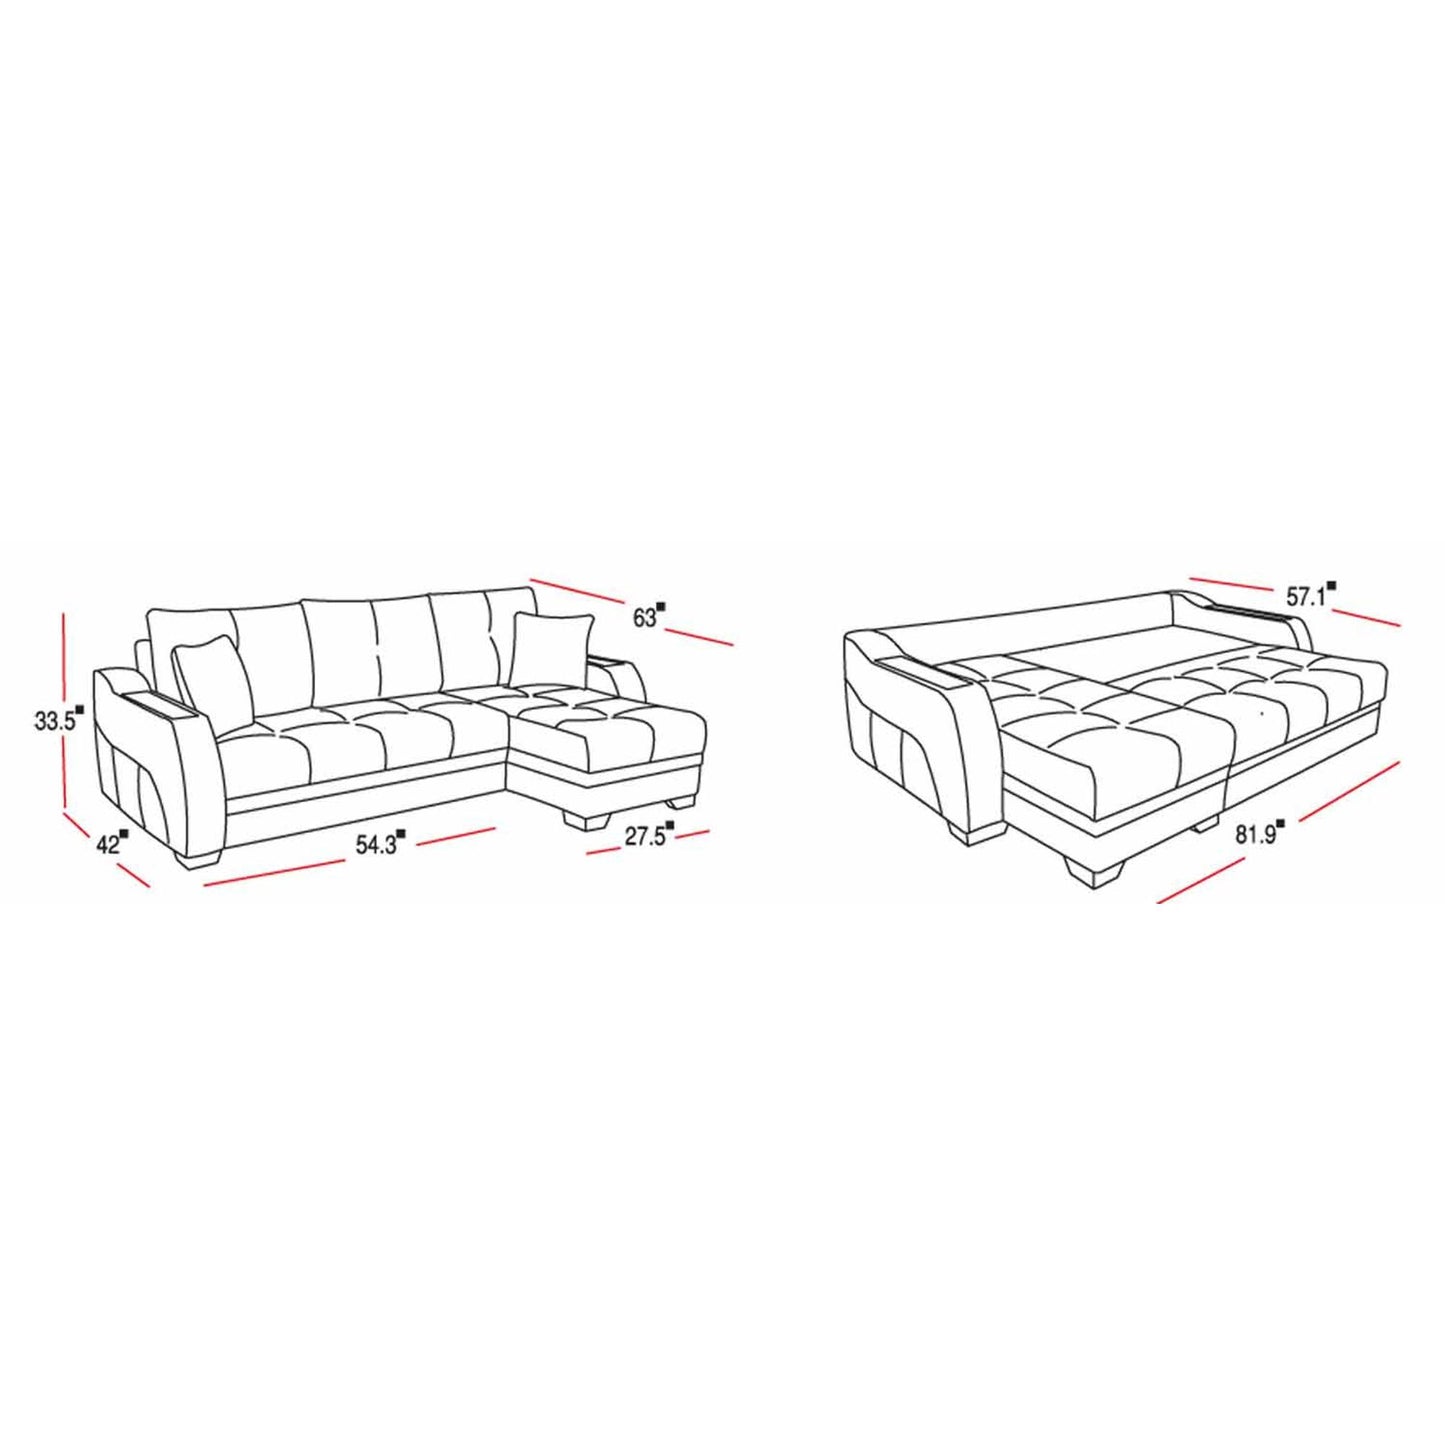 Ultra Sectional Sofa in Optimum Brown